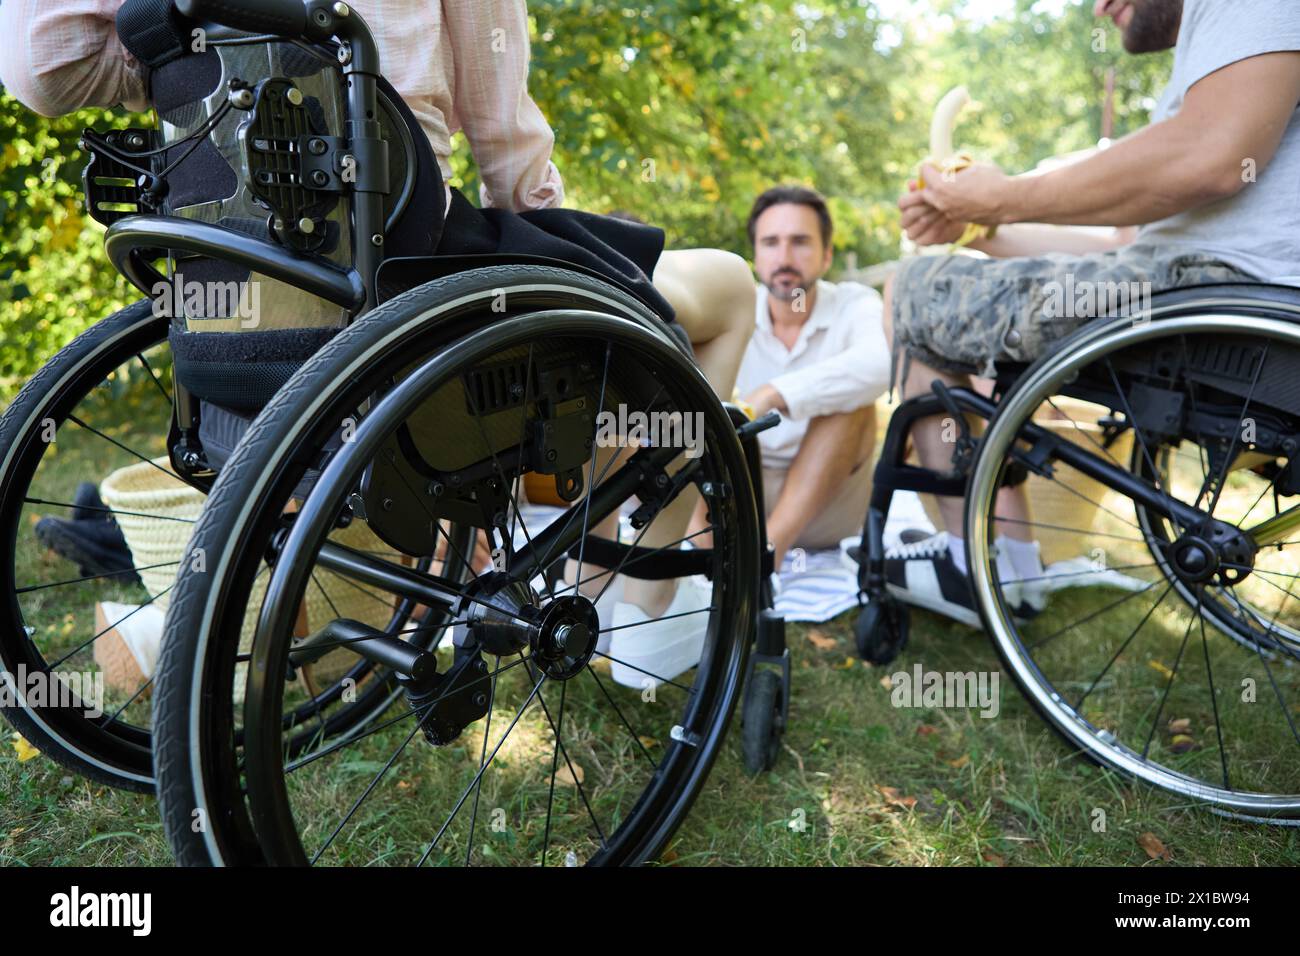 Eine friedliche Outdoor-Szene mit zwei Männern, von denen einer im Rollstuhl sitzt, die Inklusivität und Freundschaft in einer natürlichen Umgebung zeigen. Stockfoto